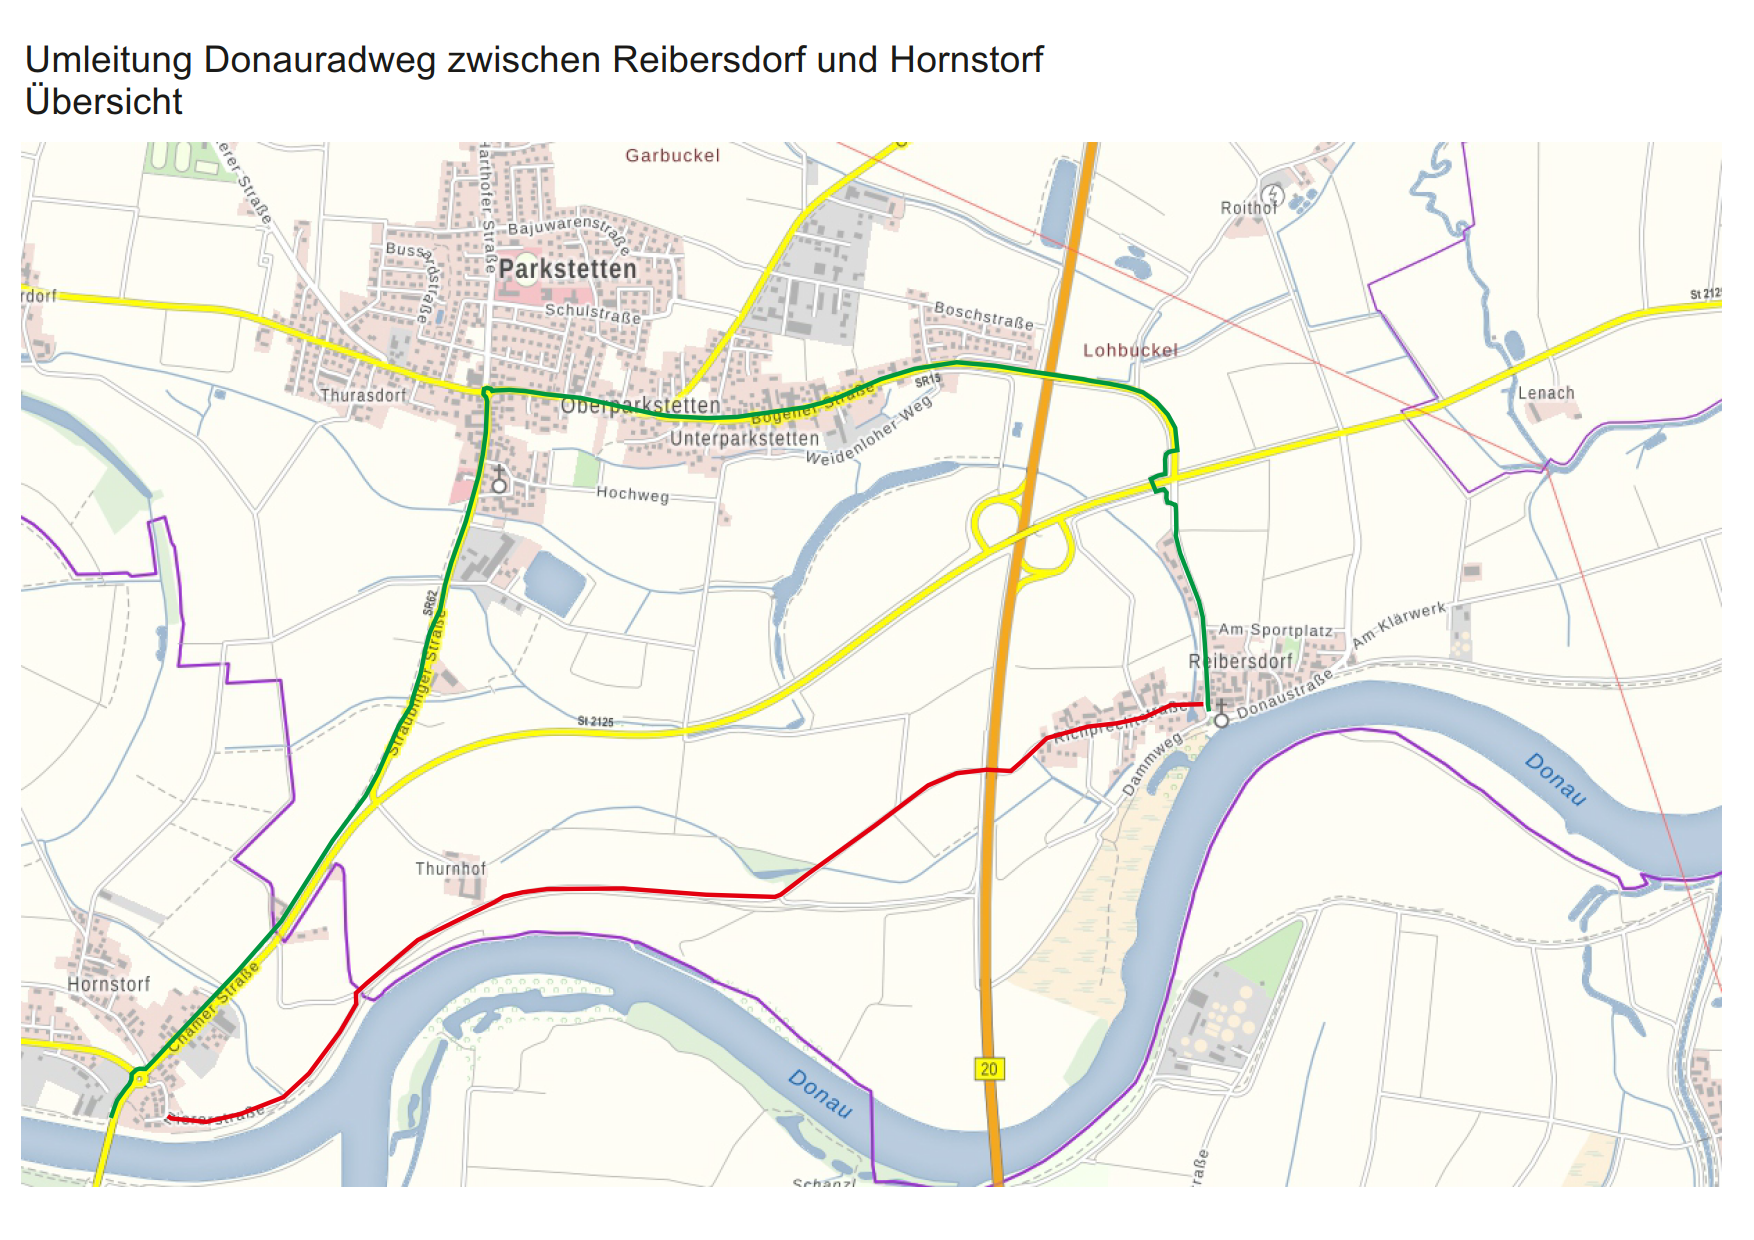 Vollsperrung des Donauradwegs zwischen Reibersdorf und Hornstorf bis 28. Februar